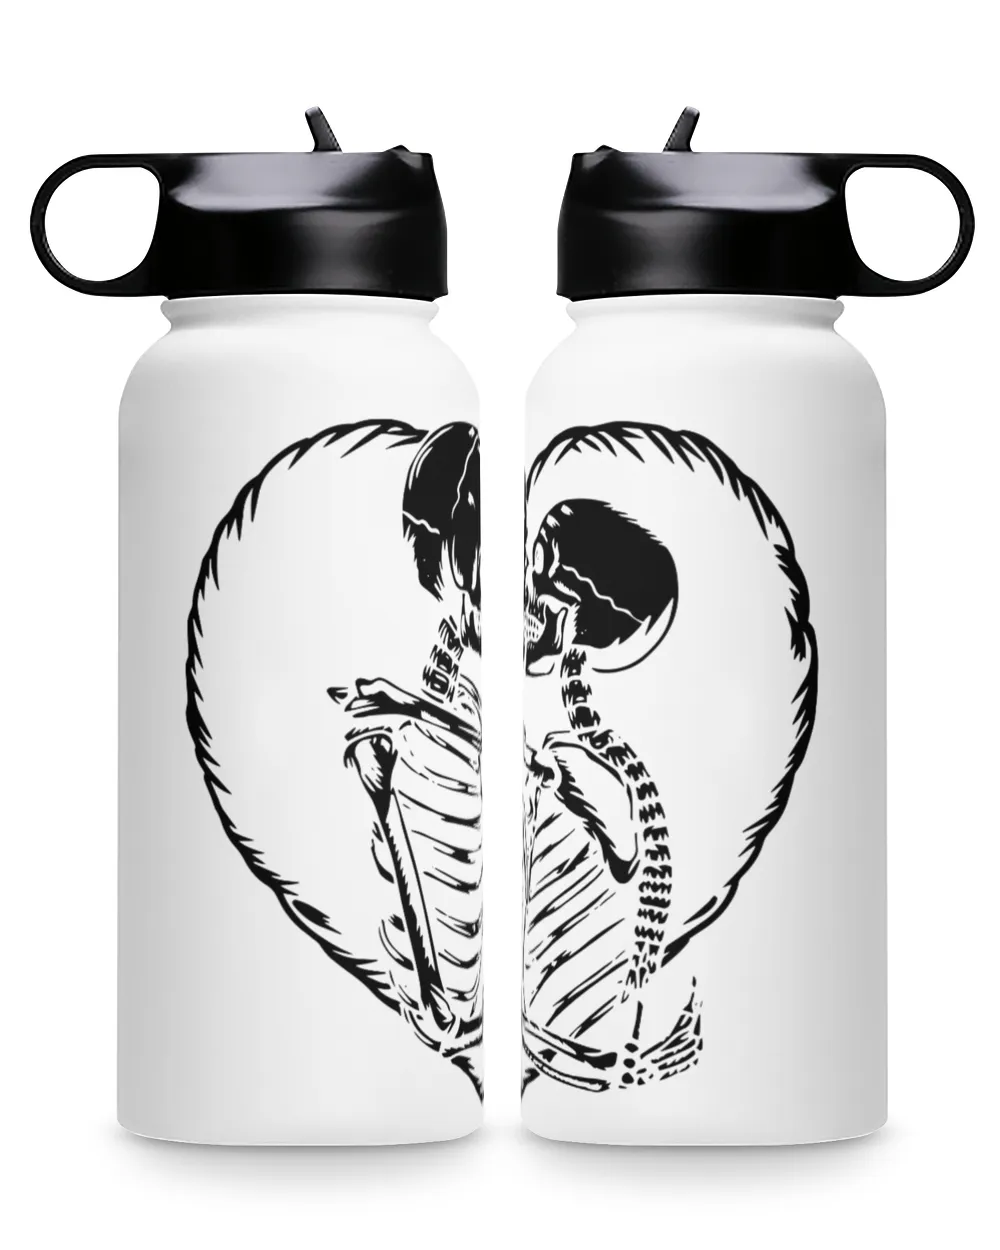 Skull Kiss Full Of Love Premium Water Bottle, skeletons kissing